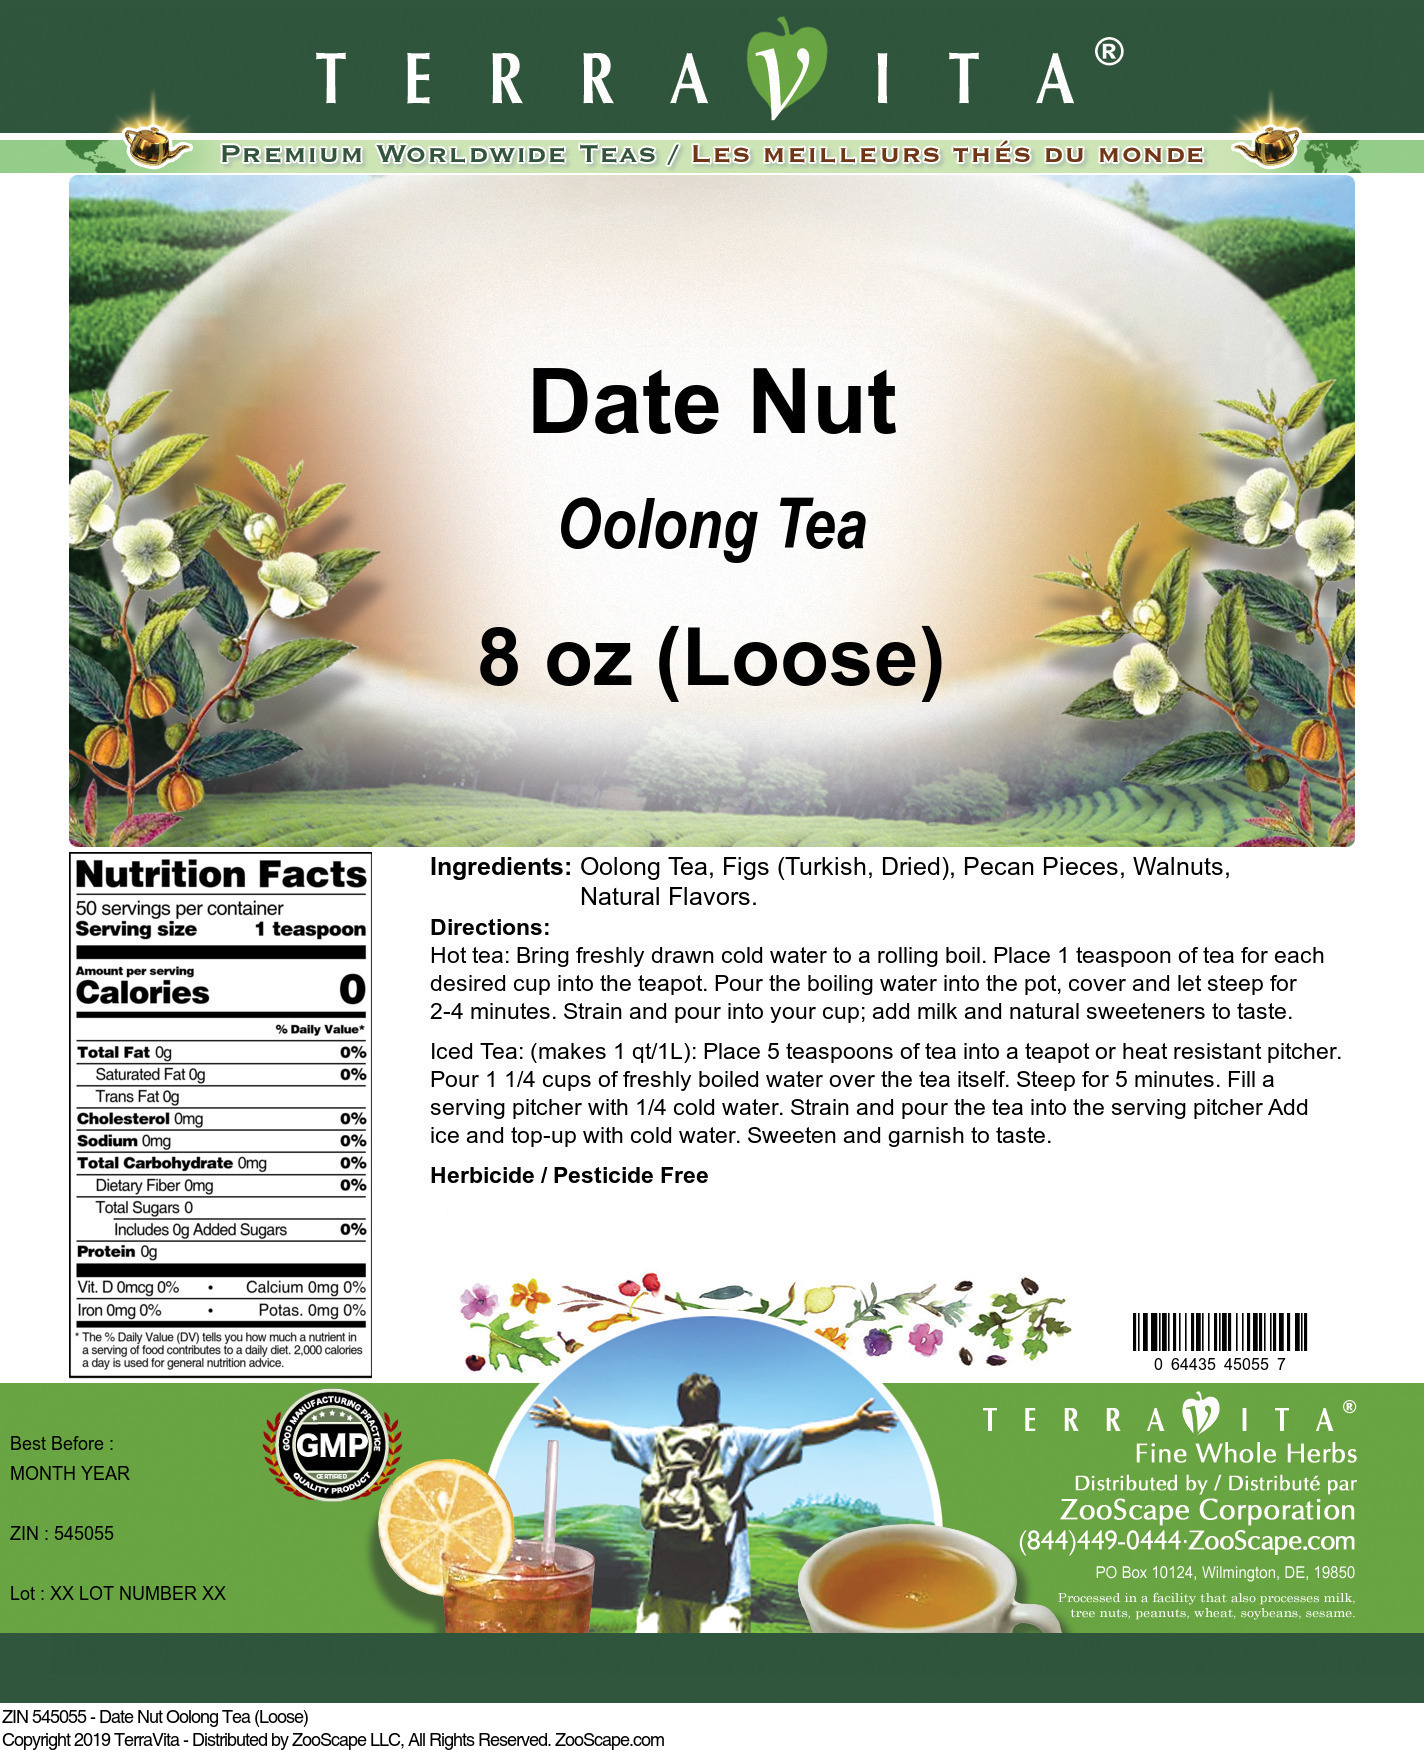 Date Nut Oolong Tea (Loose) - Label